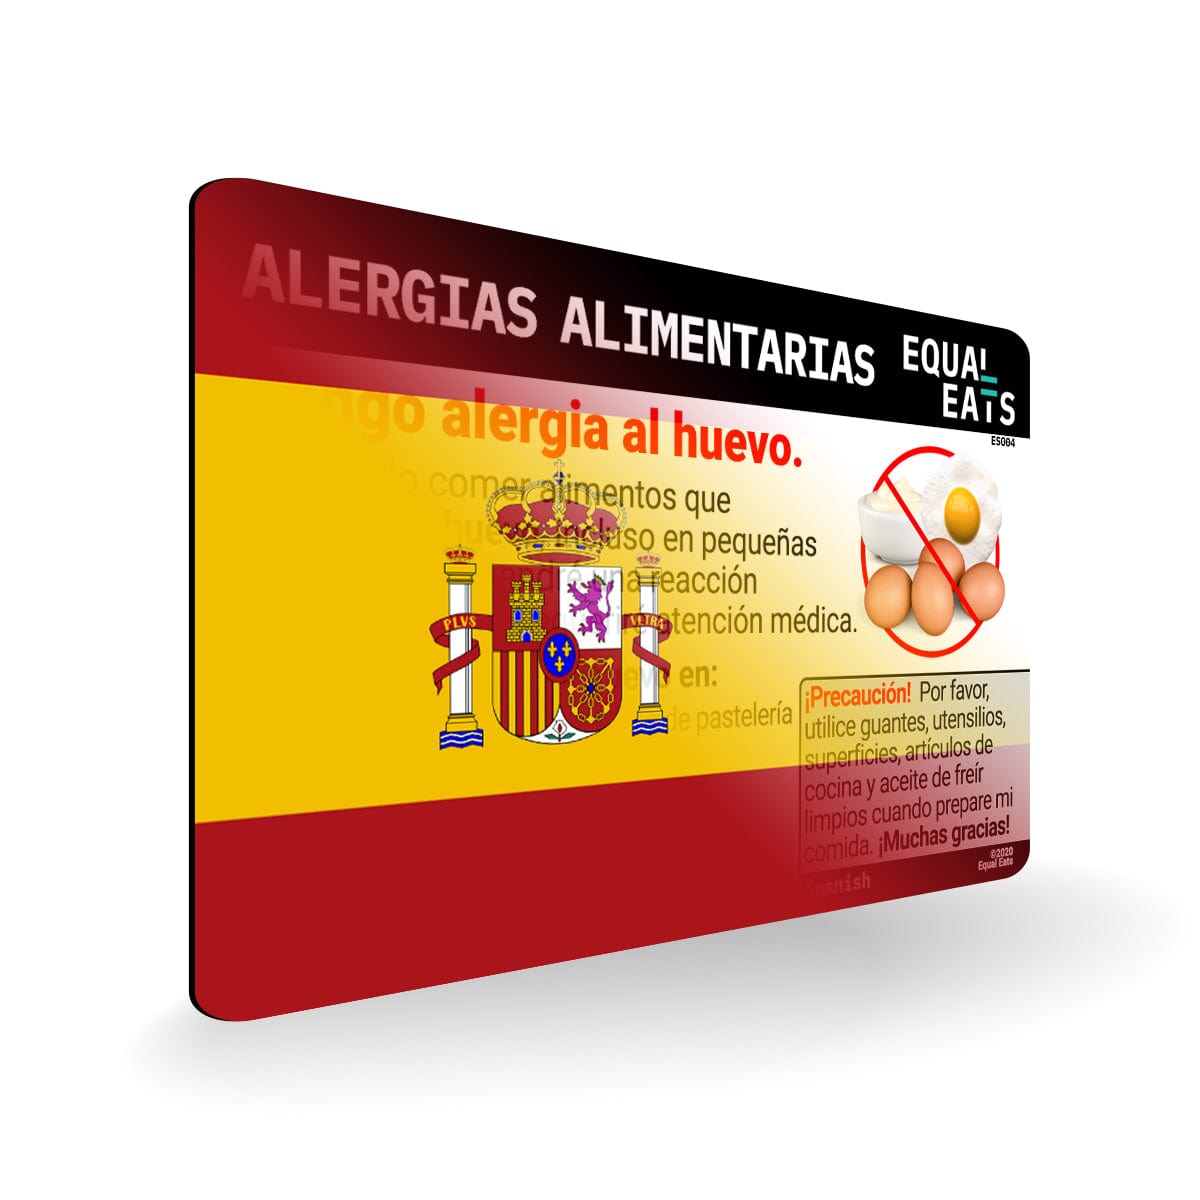 Egg Allergy in Spanish. Egg Allergy Card for Spain